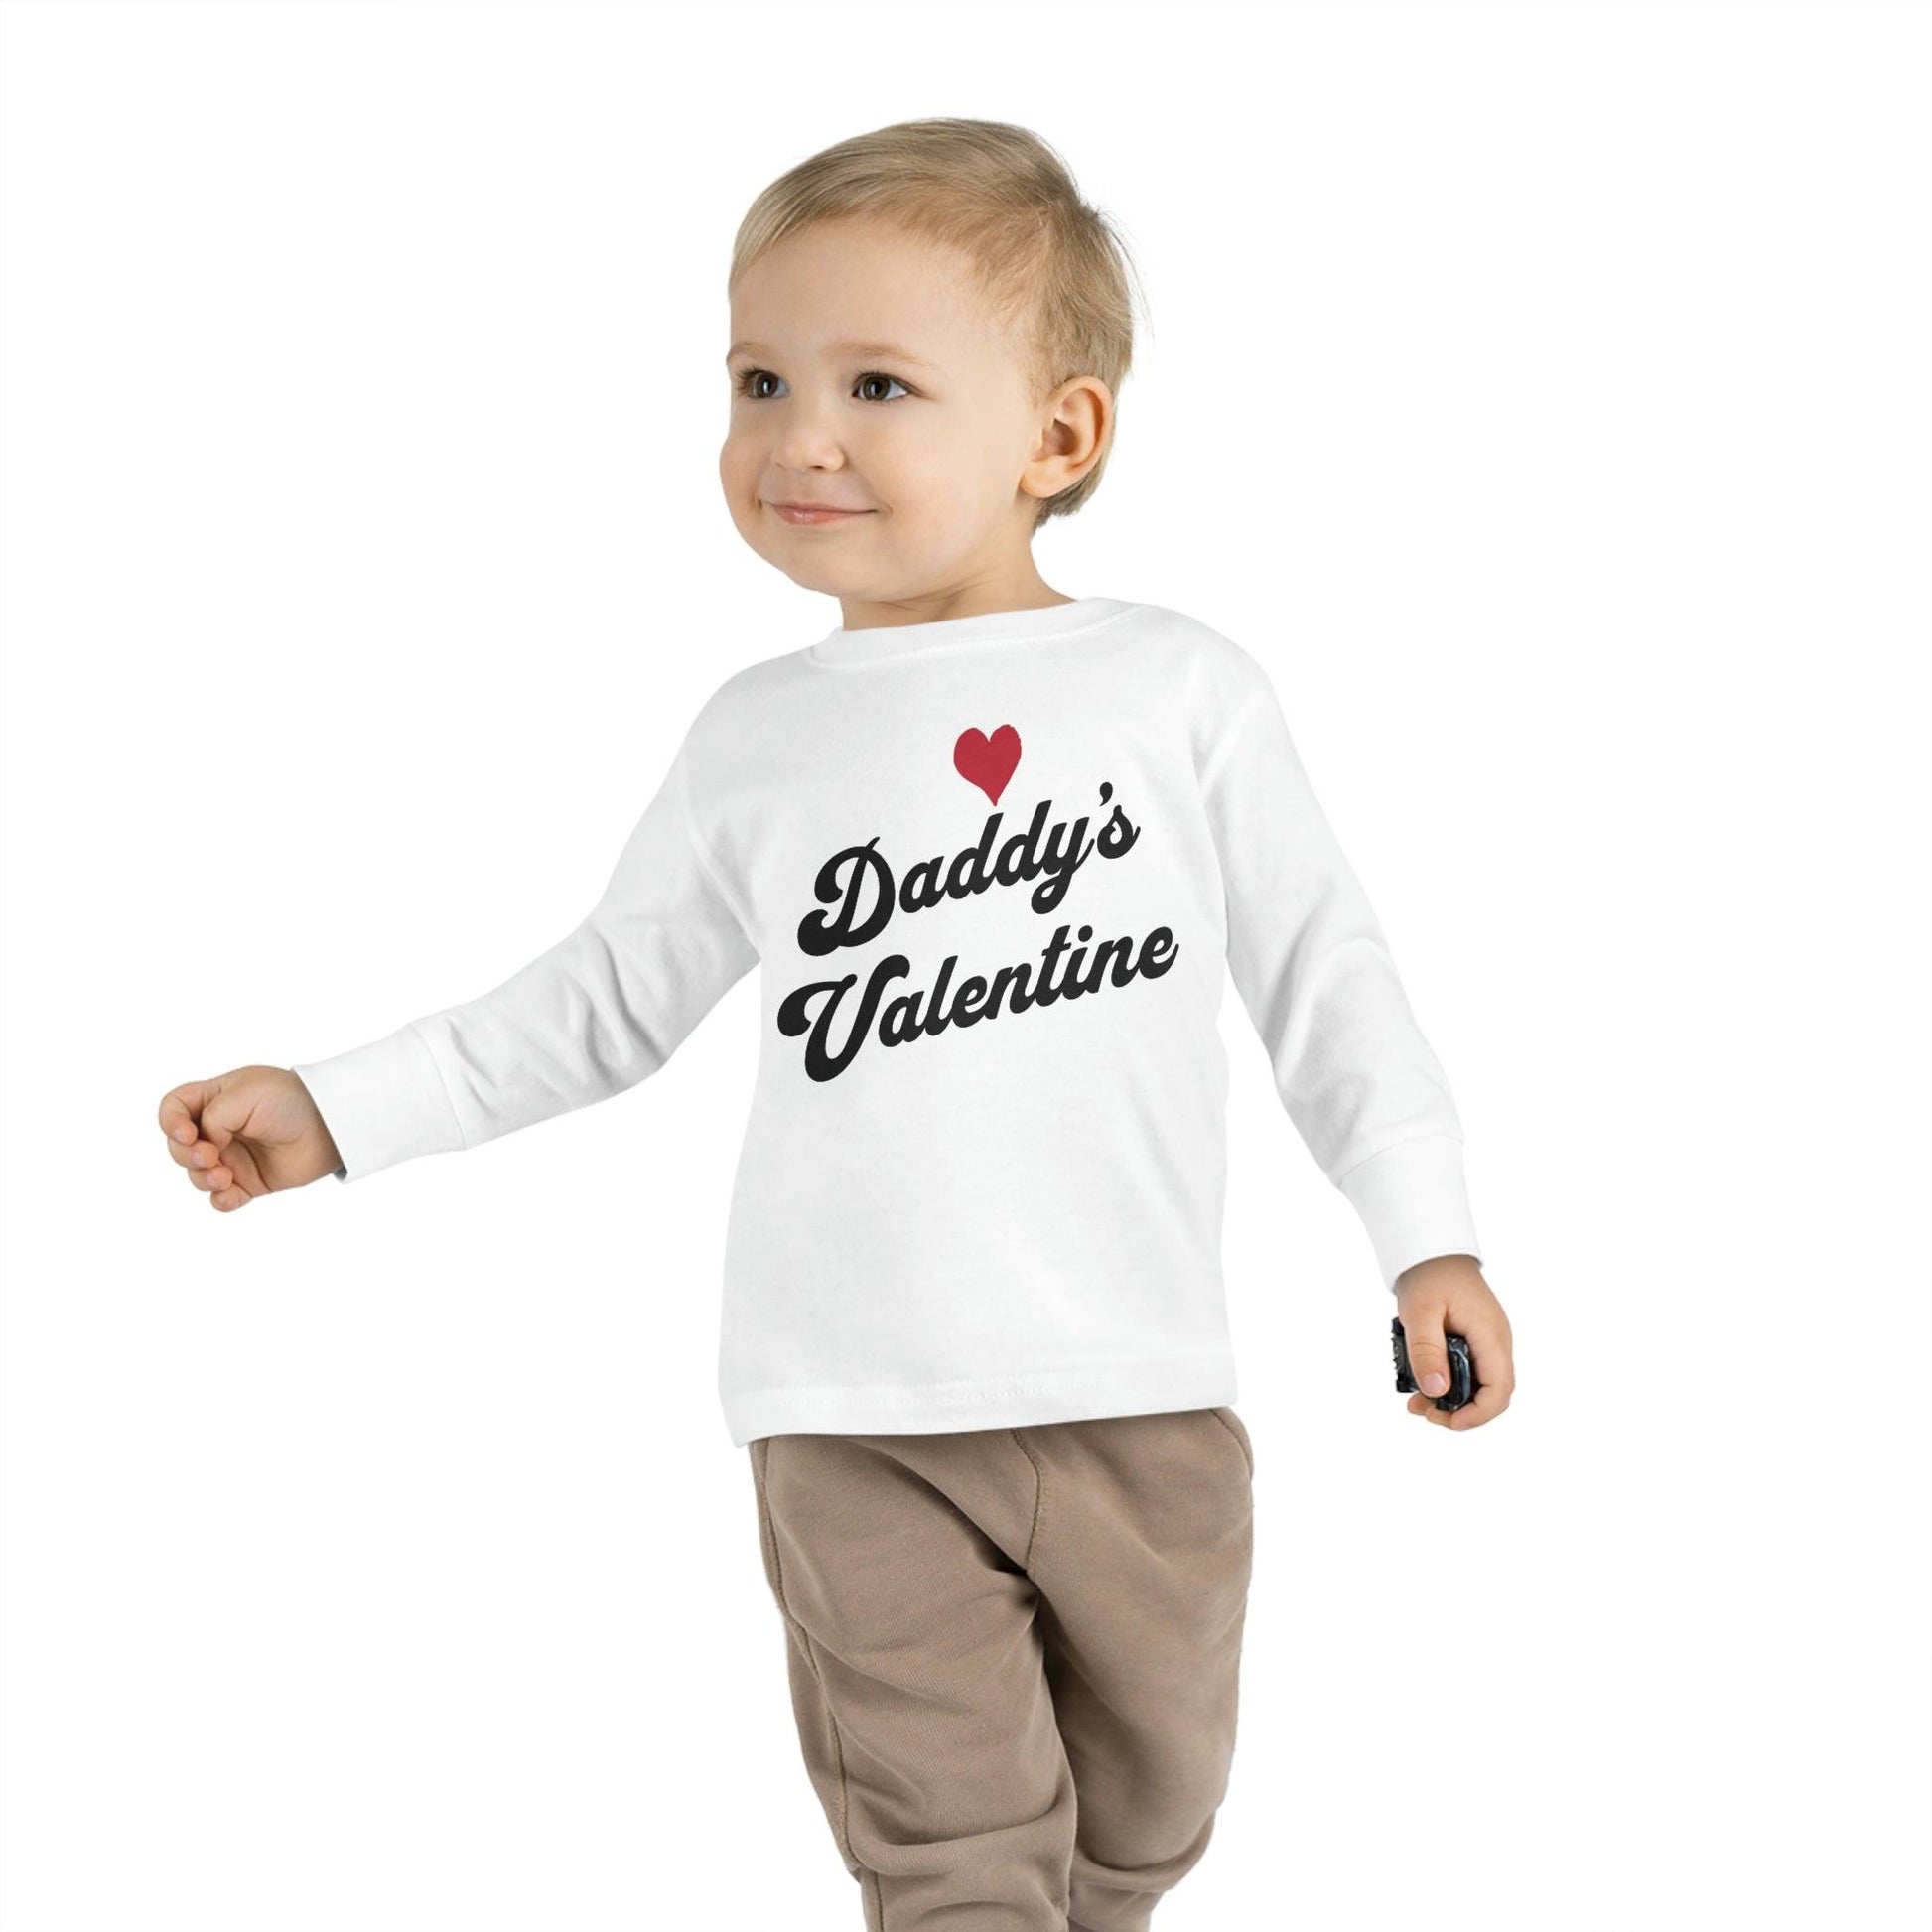 Daddy's Valentine - Kids Valentine day shirt - Giftsmojo